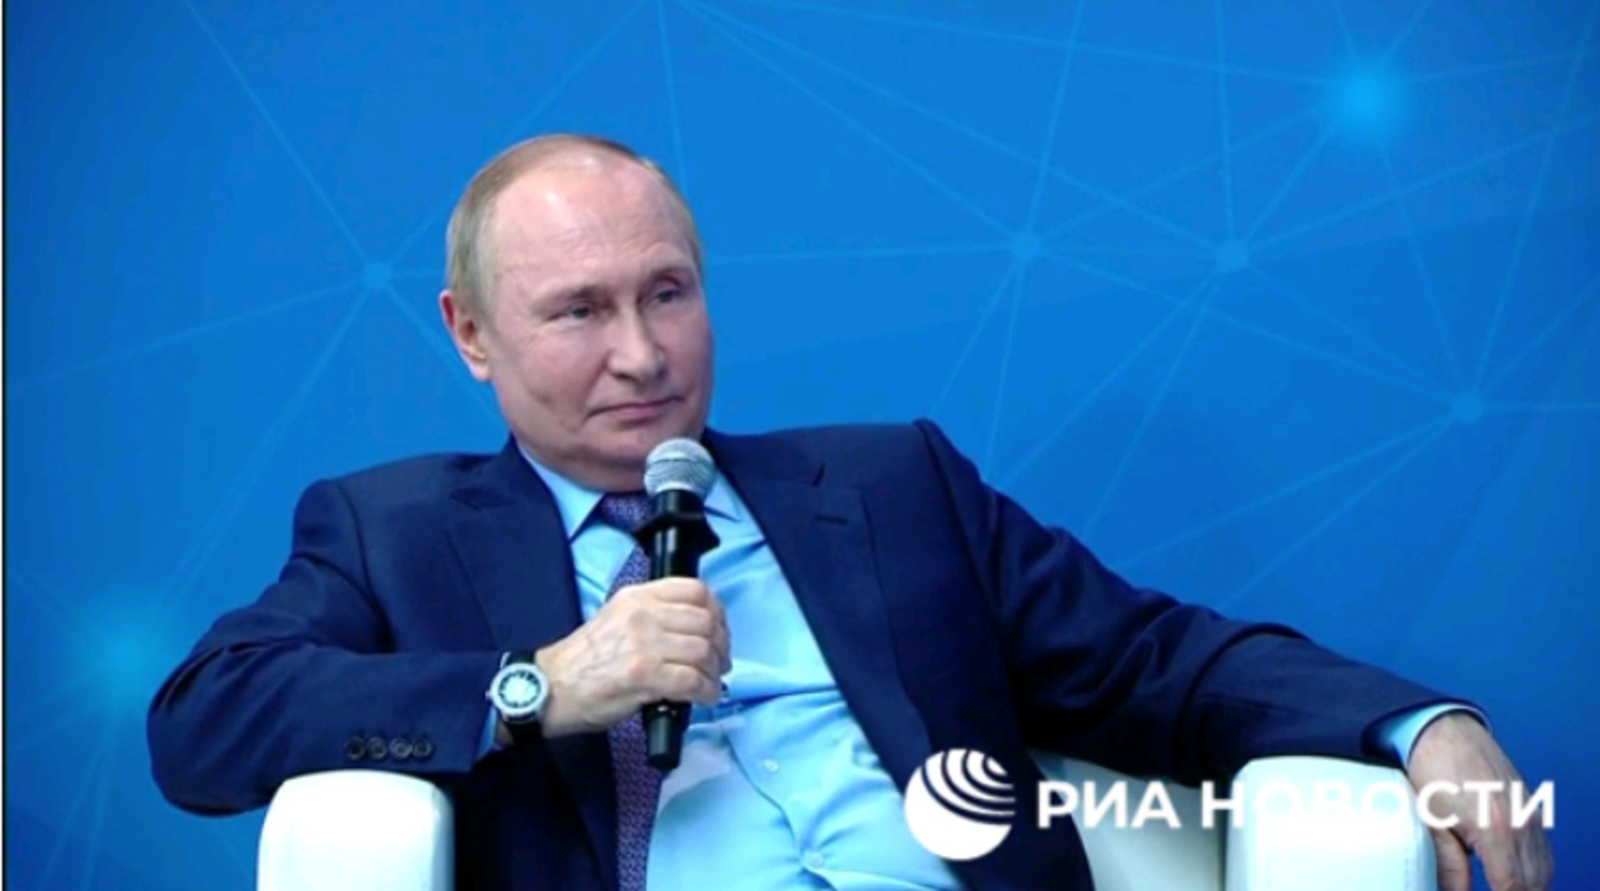 Через десять лет Россия будет жить лучше, заявил Путин